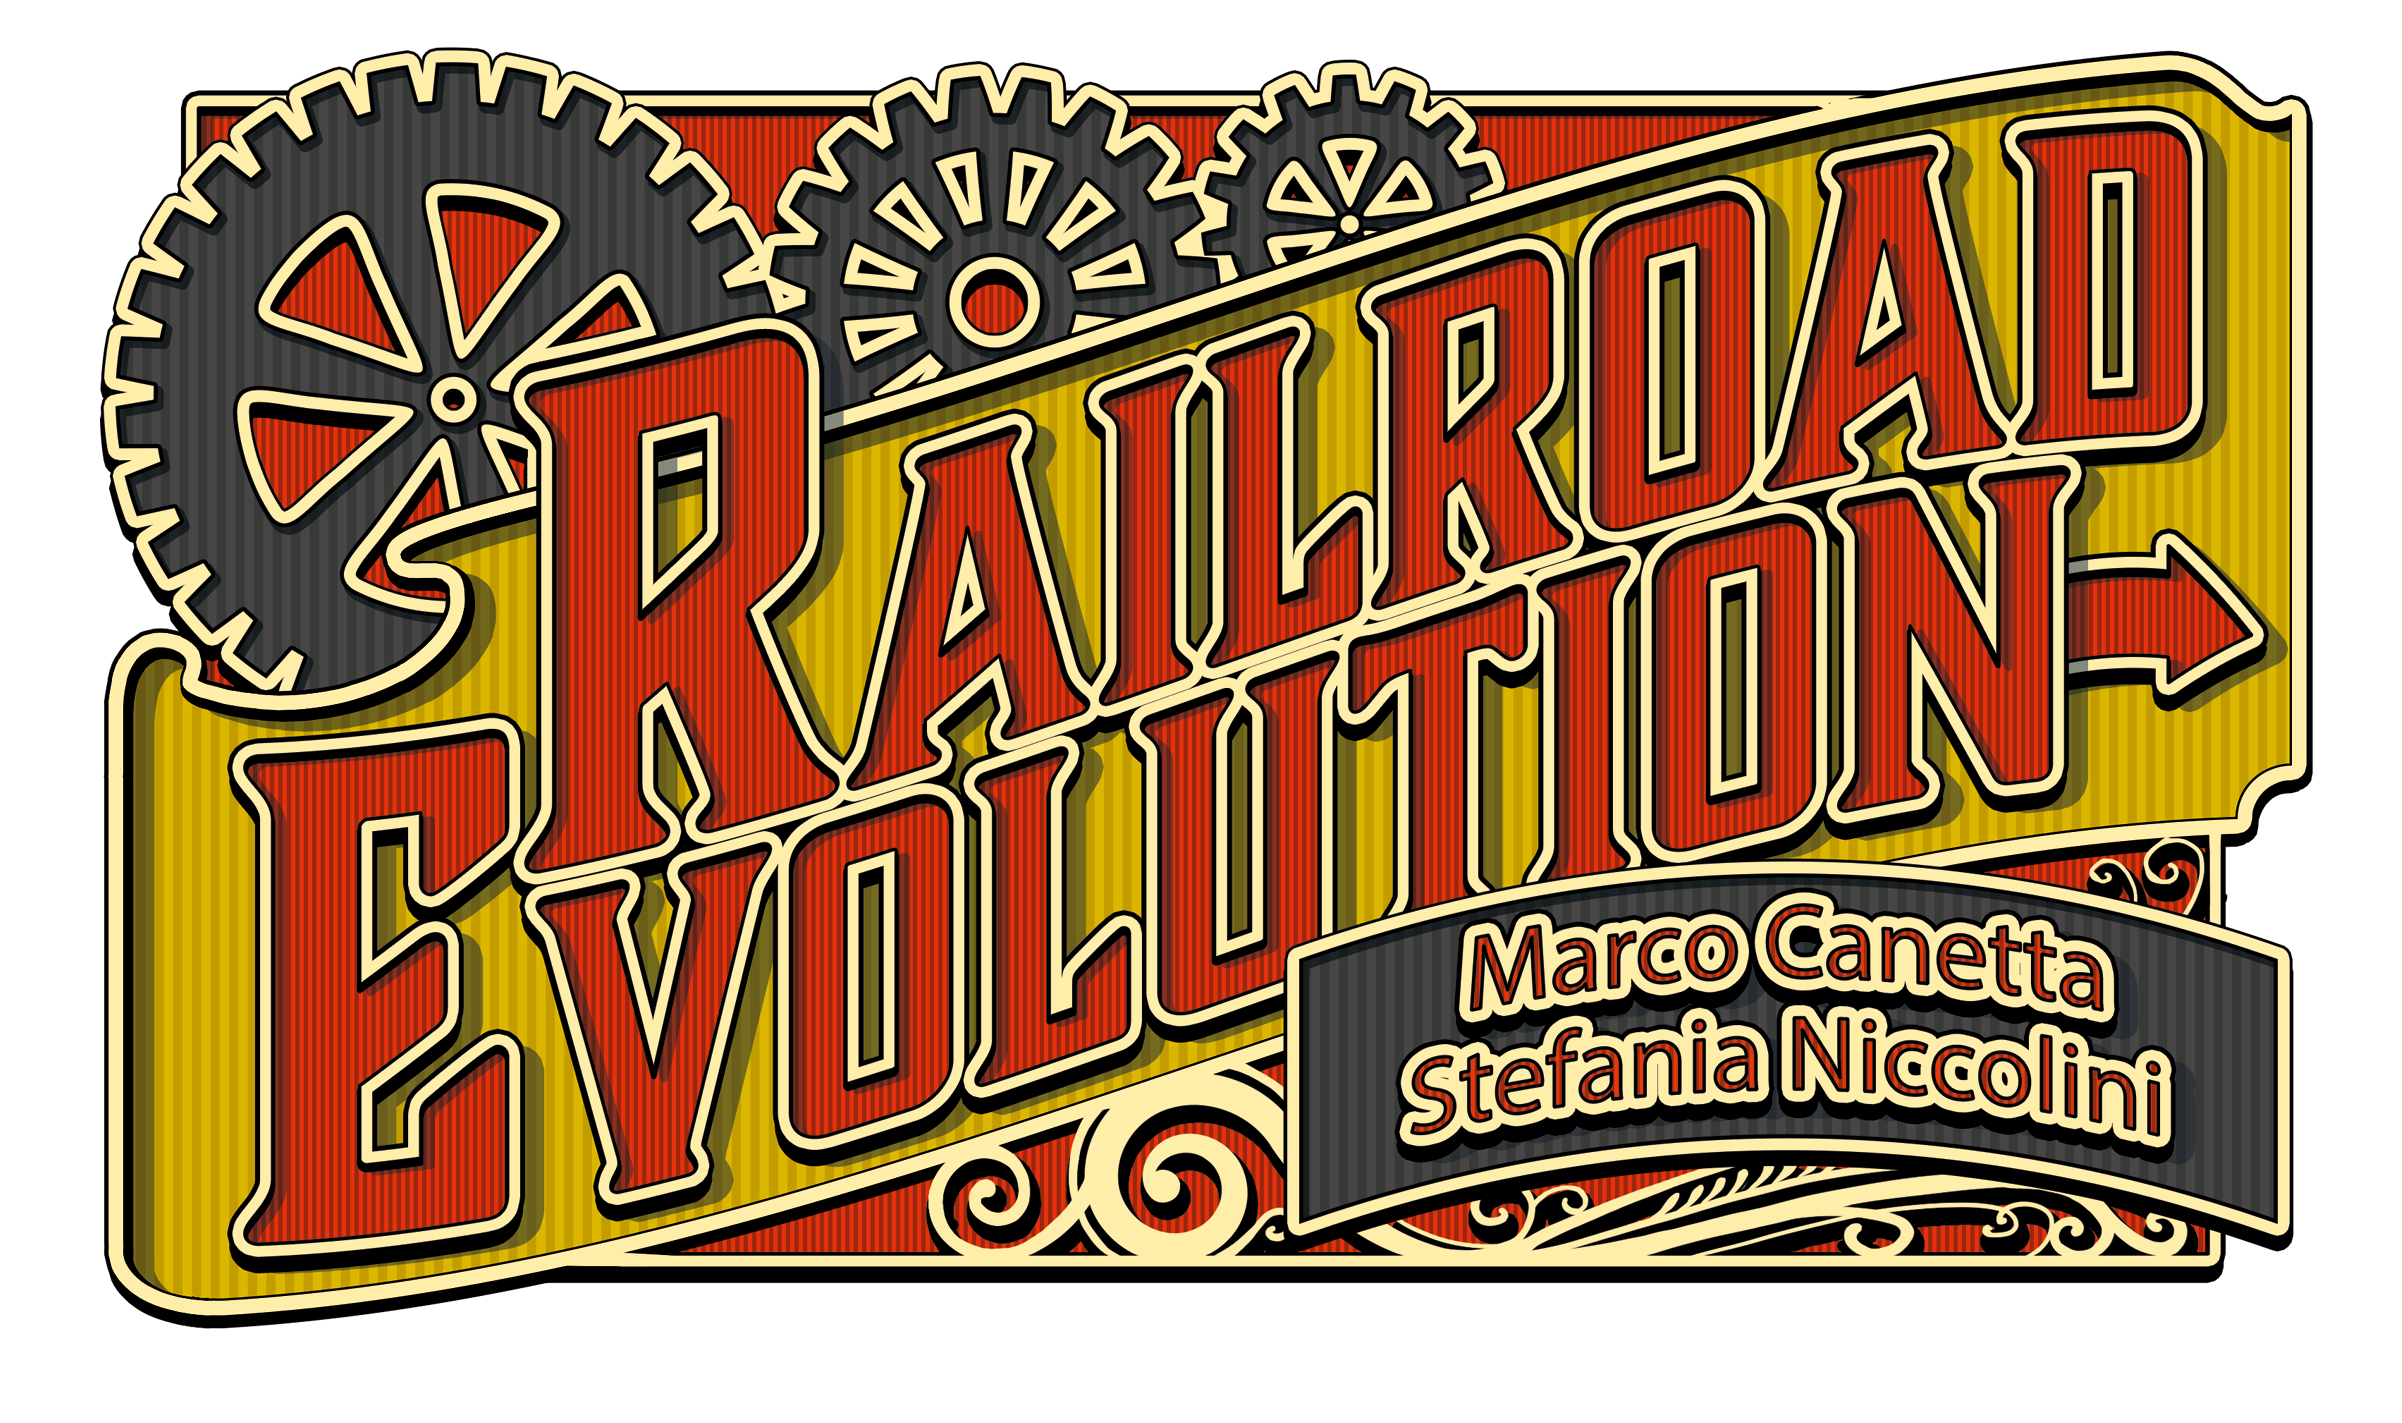 Railroad Evolution für Railroad Revolution angekündigt